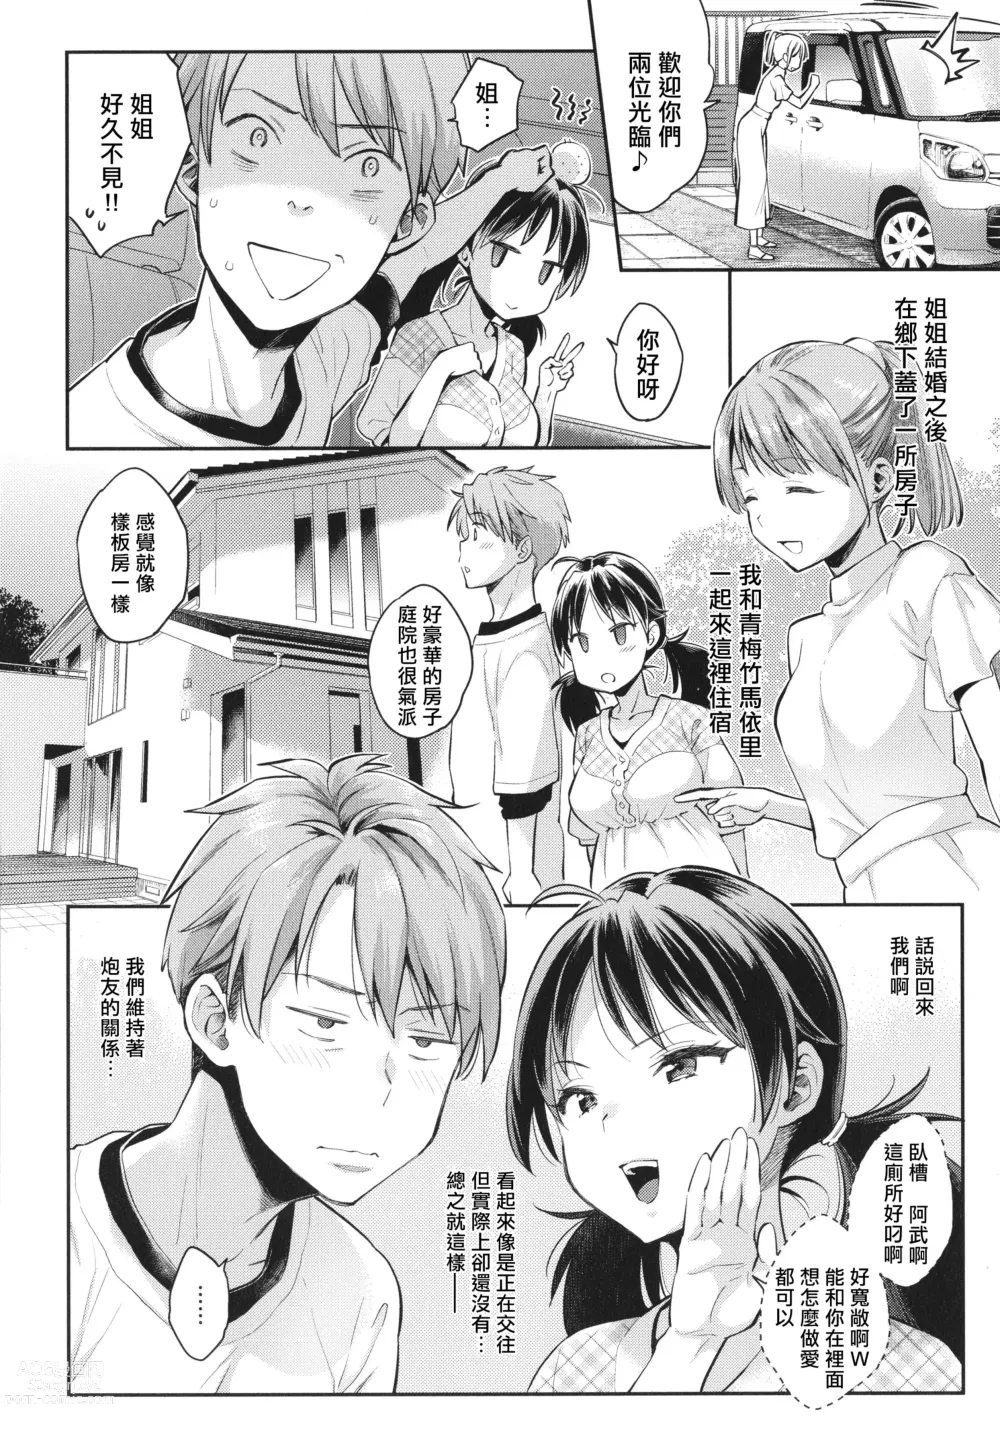 Page 13 of manga Anata to Gachinko Taiketsu - ANATA TO GACHINKO BATTLE!!!!! + Toranoana Gentei Leaflet